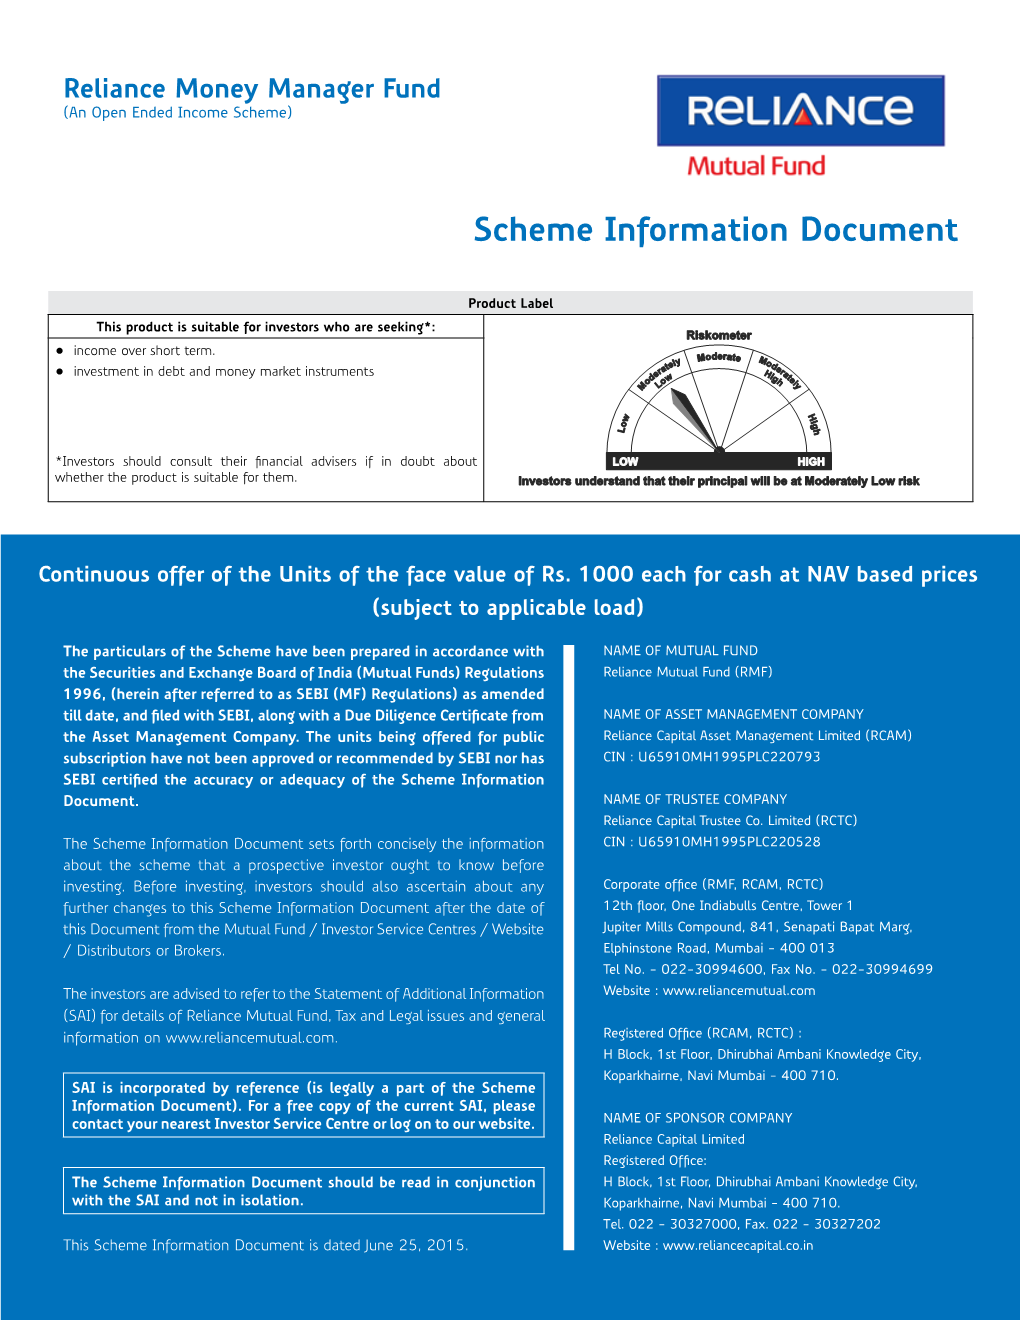 Scheme Information Document